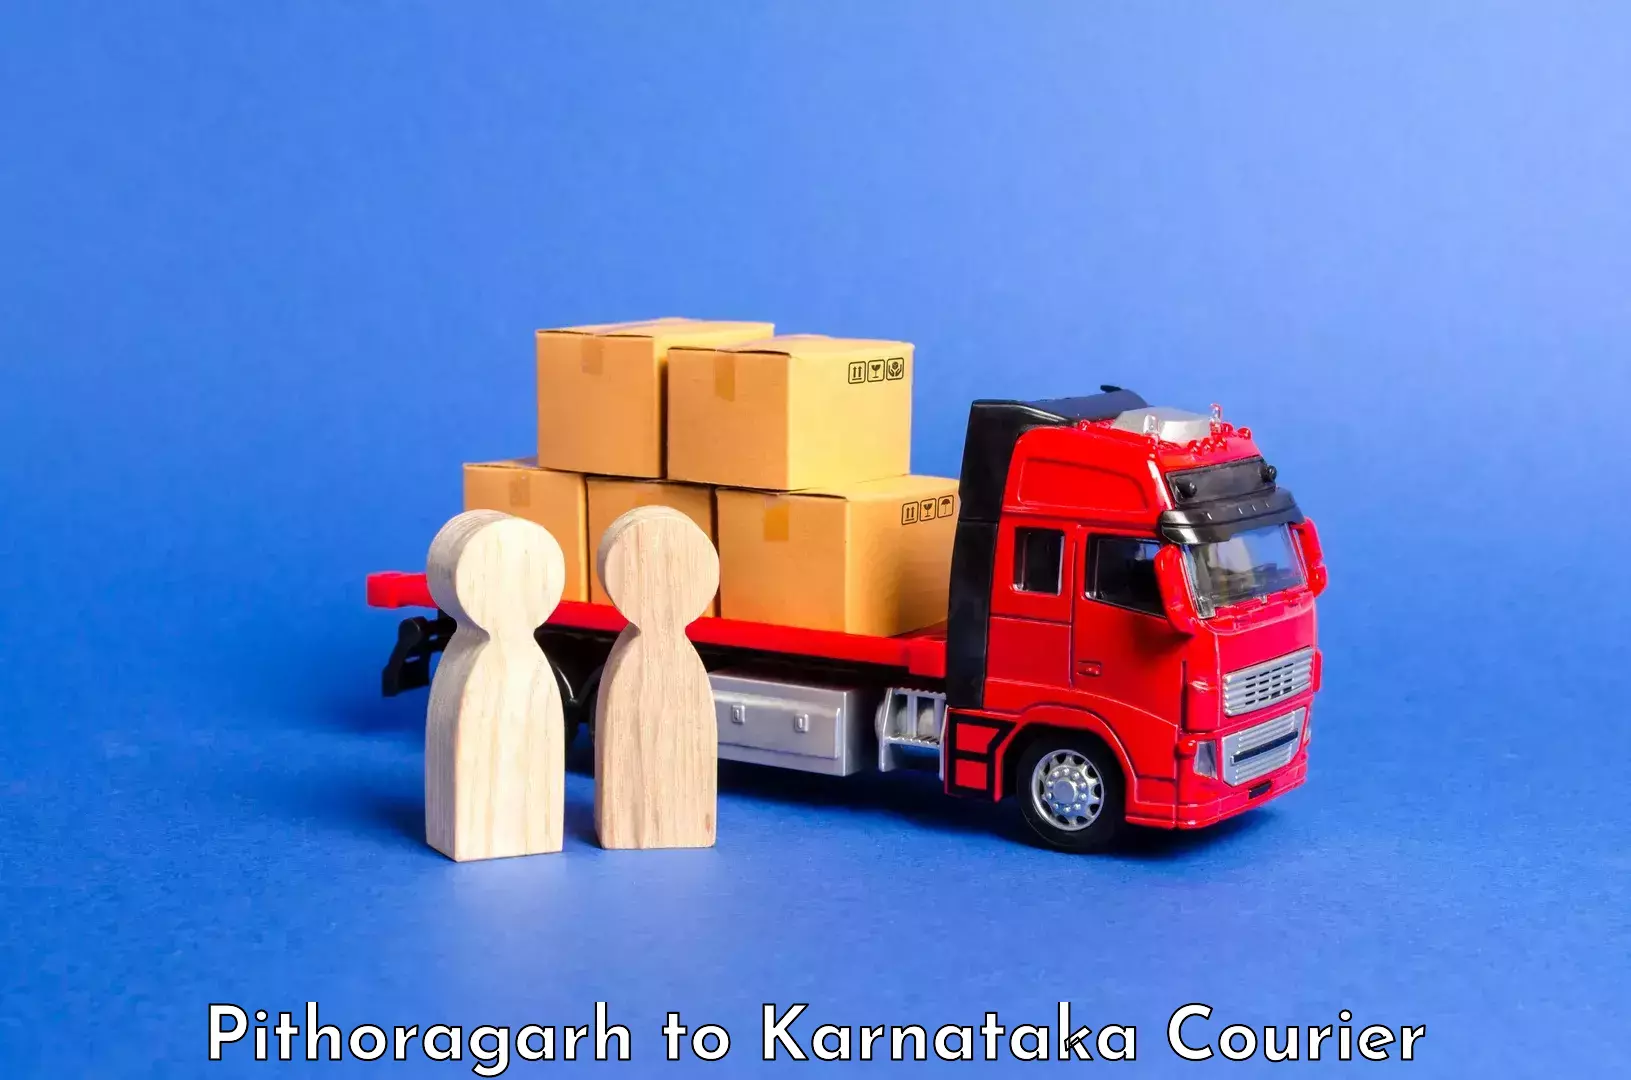 Urban luggage shipping Pithoragarh to Karnataka